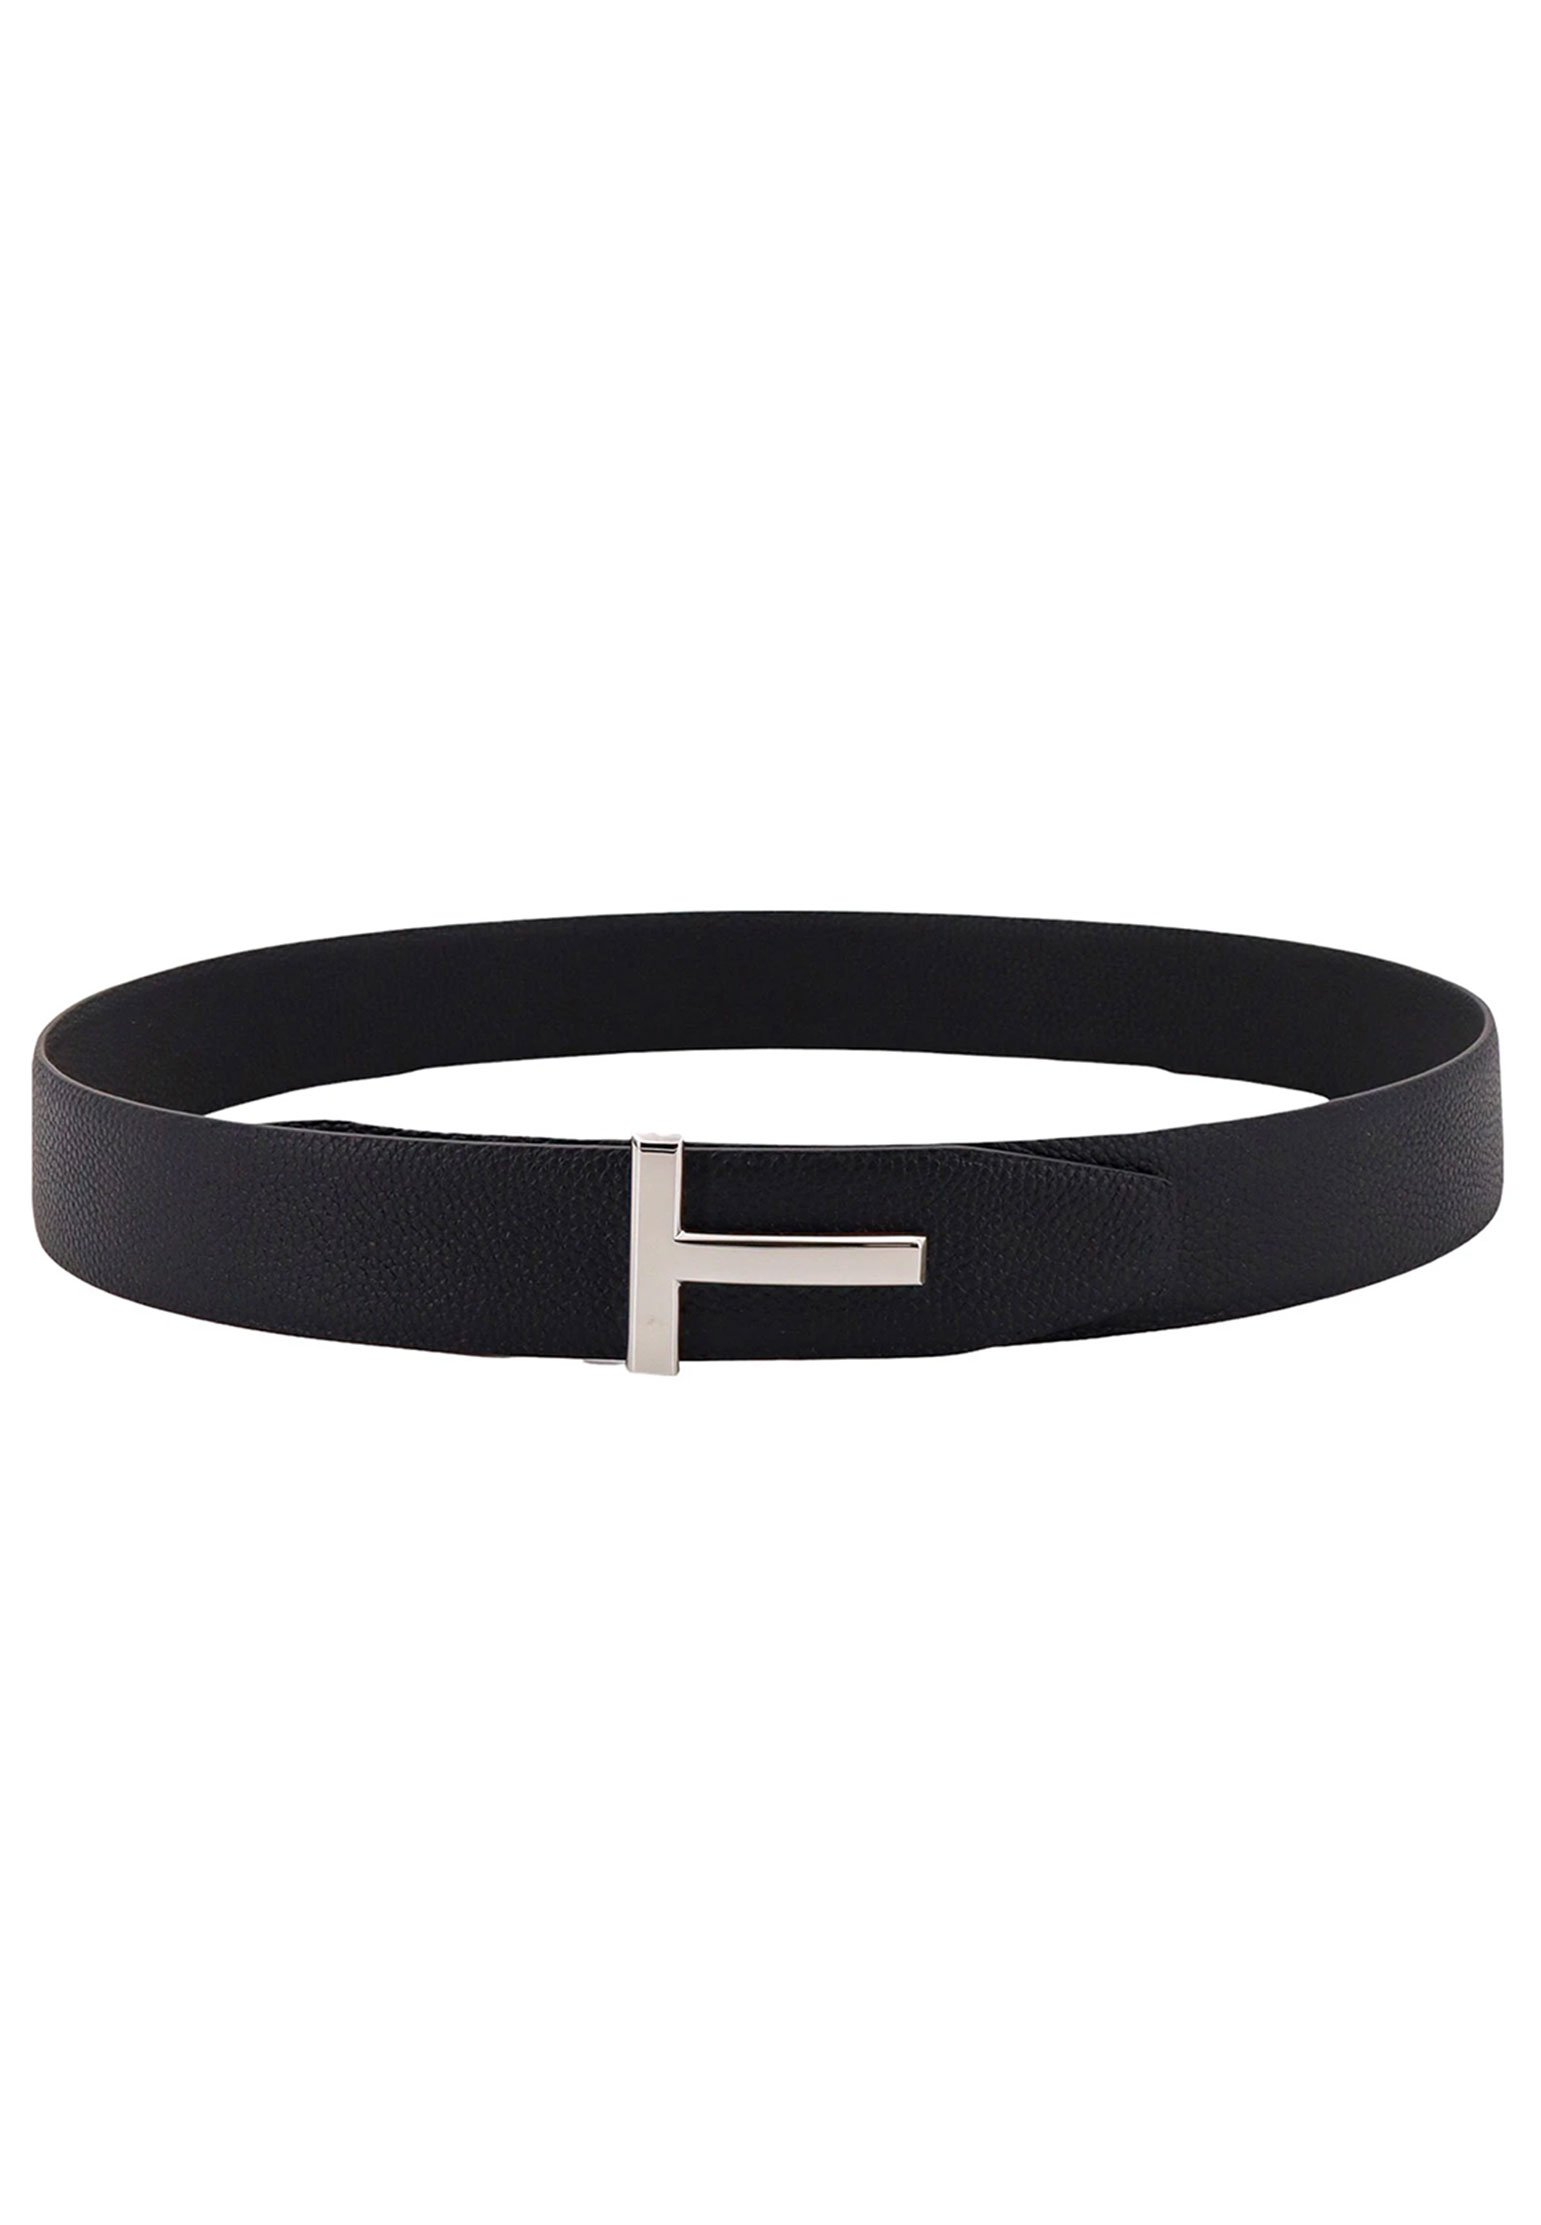 Belt TOM FORD Color: black (Code: 2146) in online store Allure